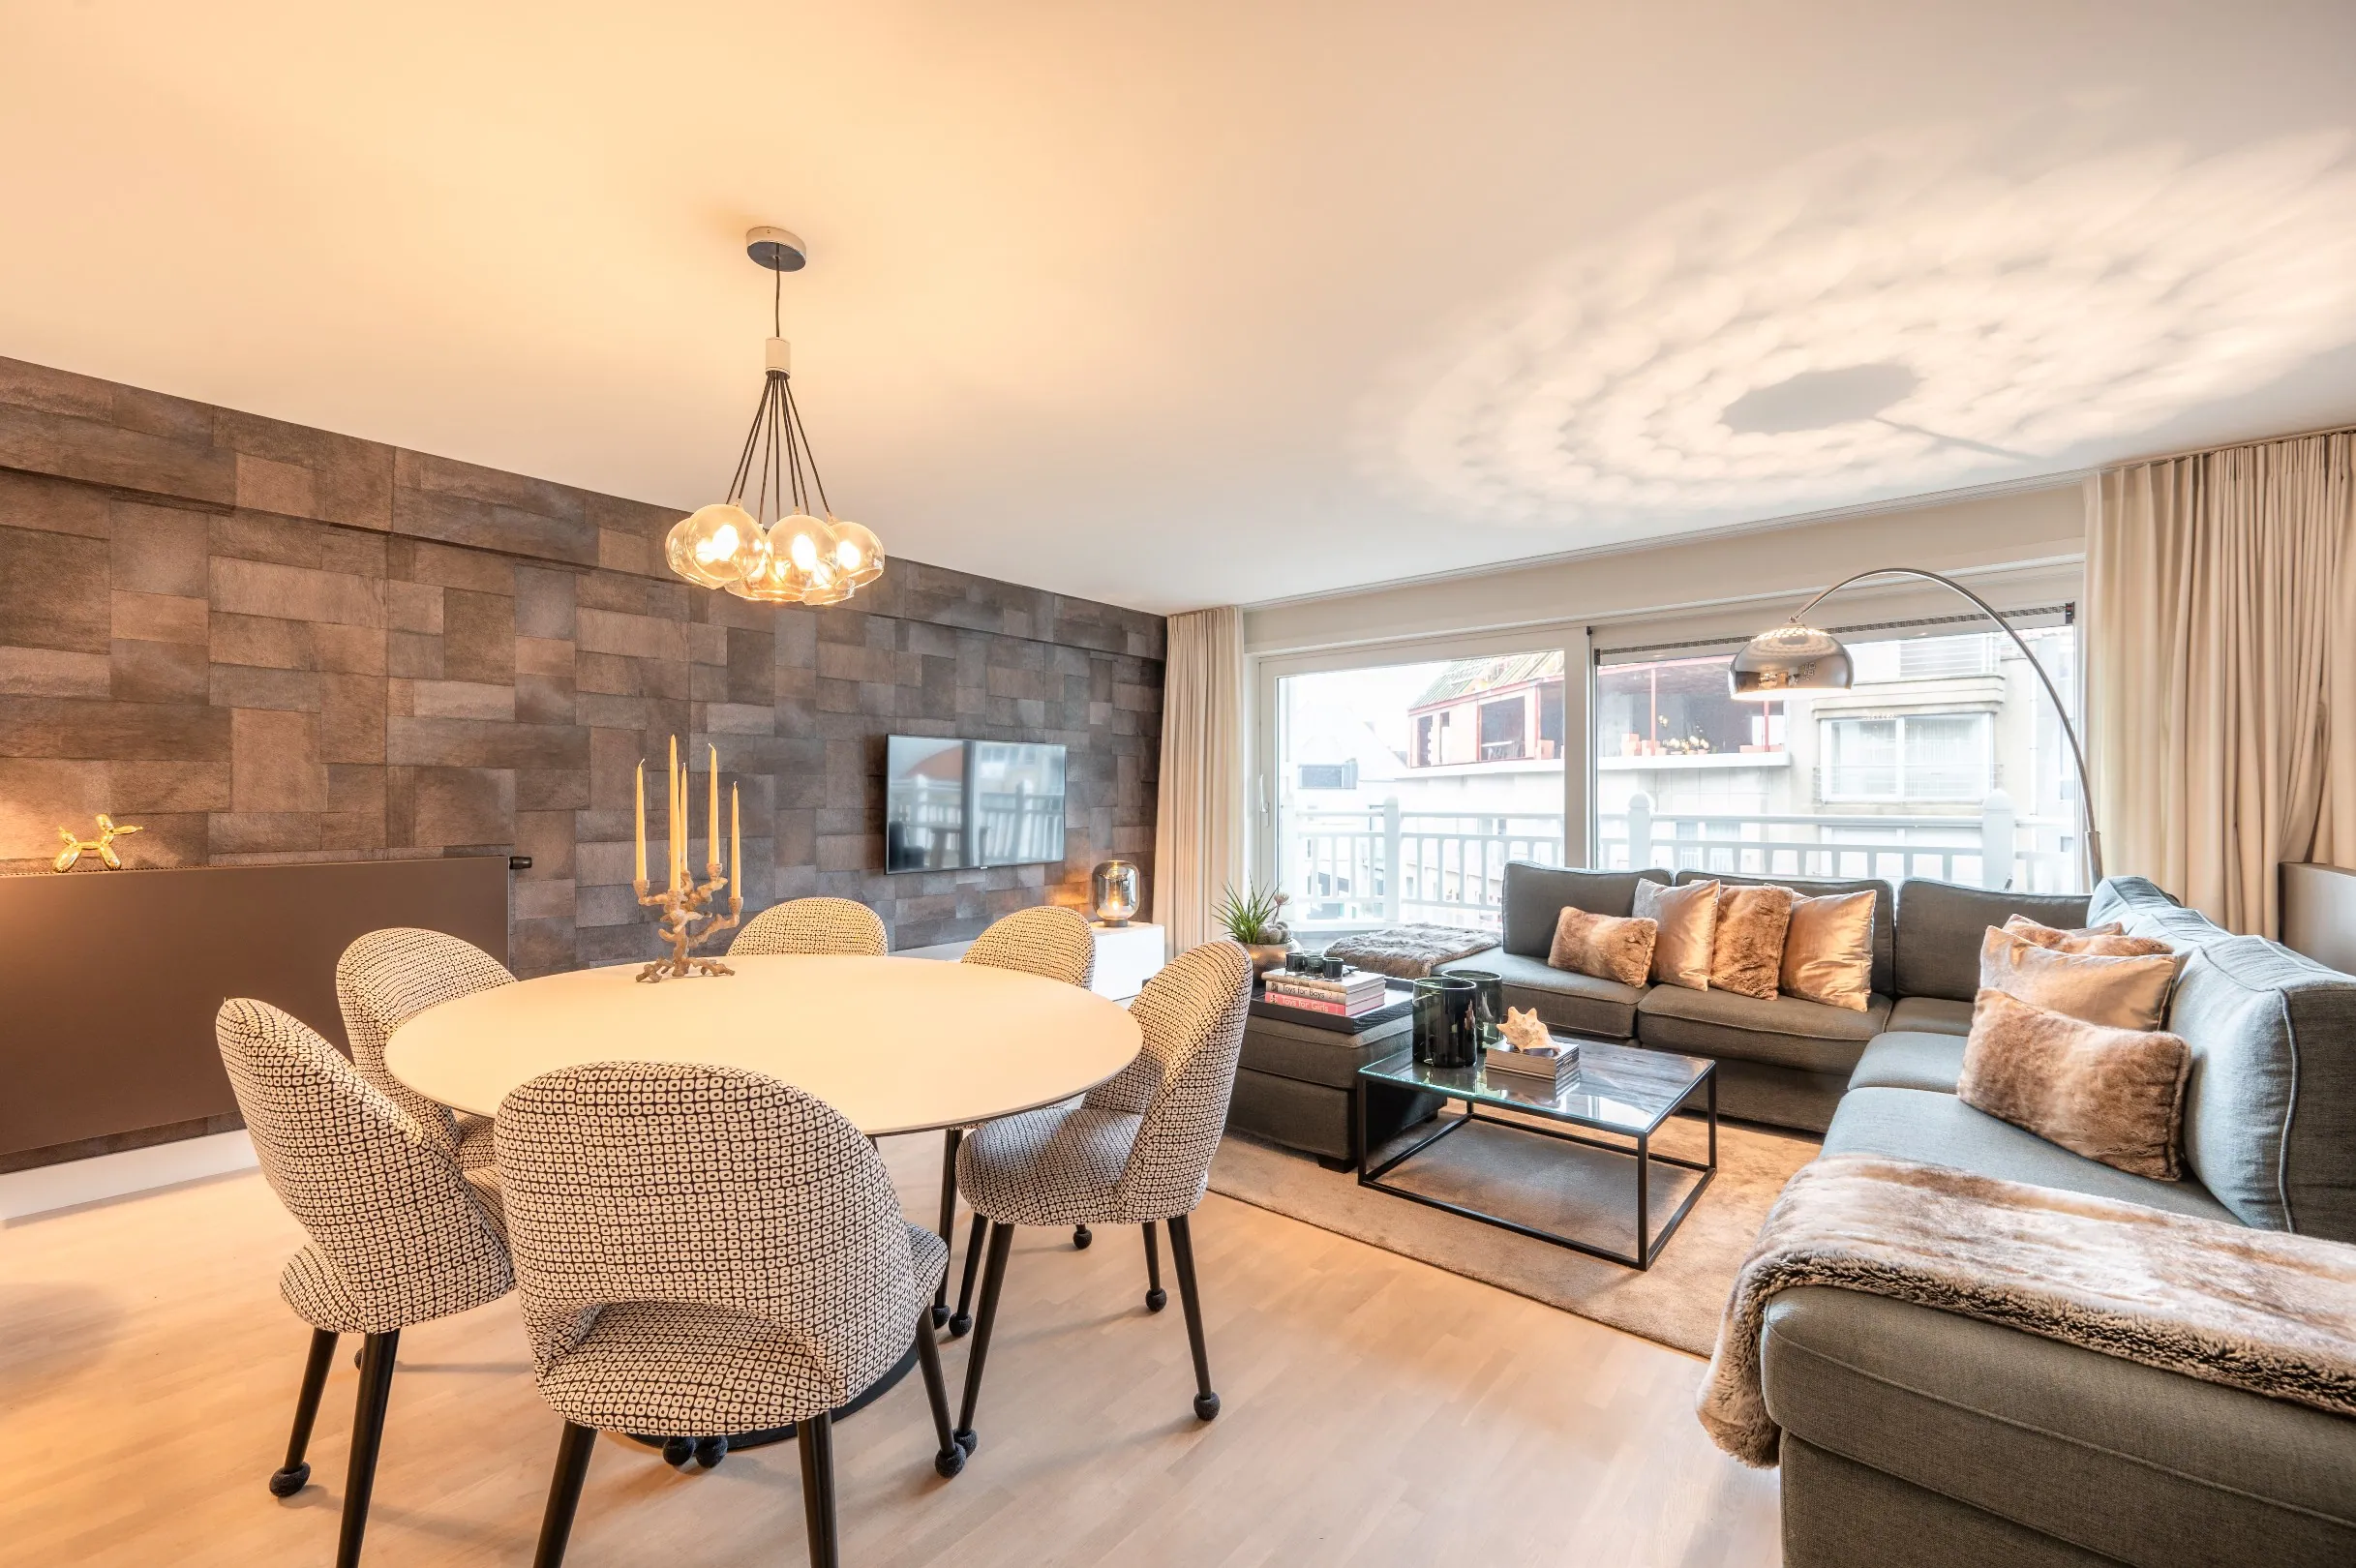 Appartement confortable situé dans la Lippenslaan avec une magnifique vue sur la Dumortierlaan.